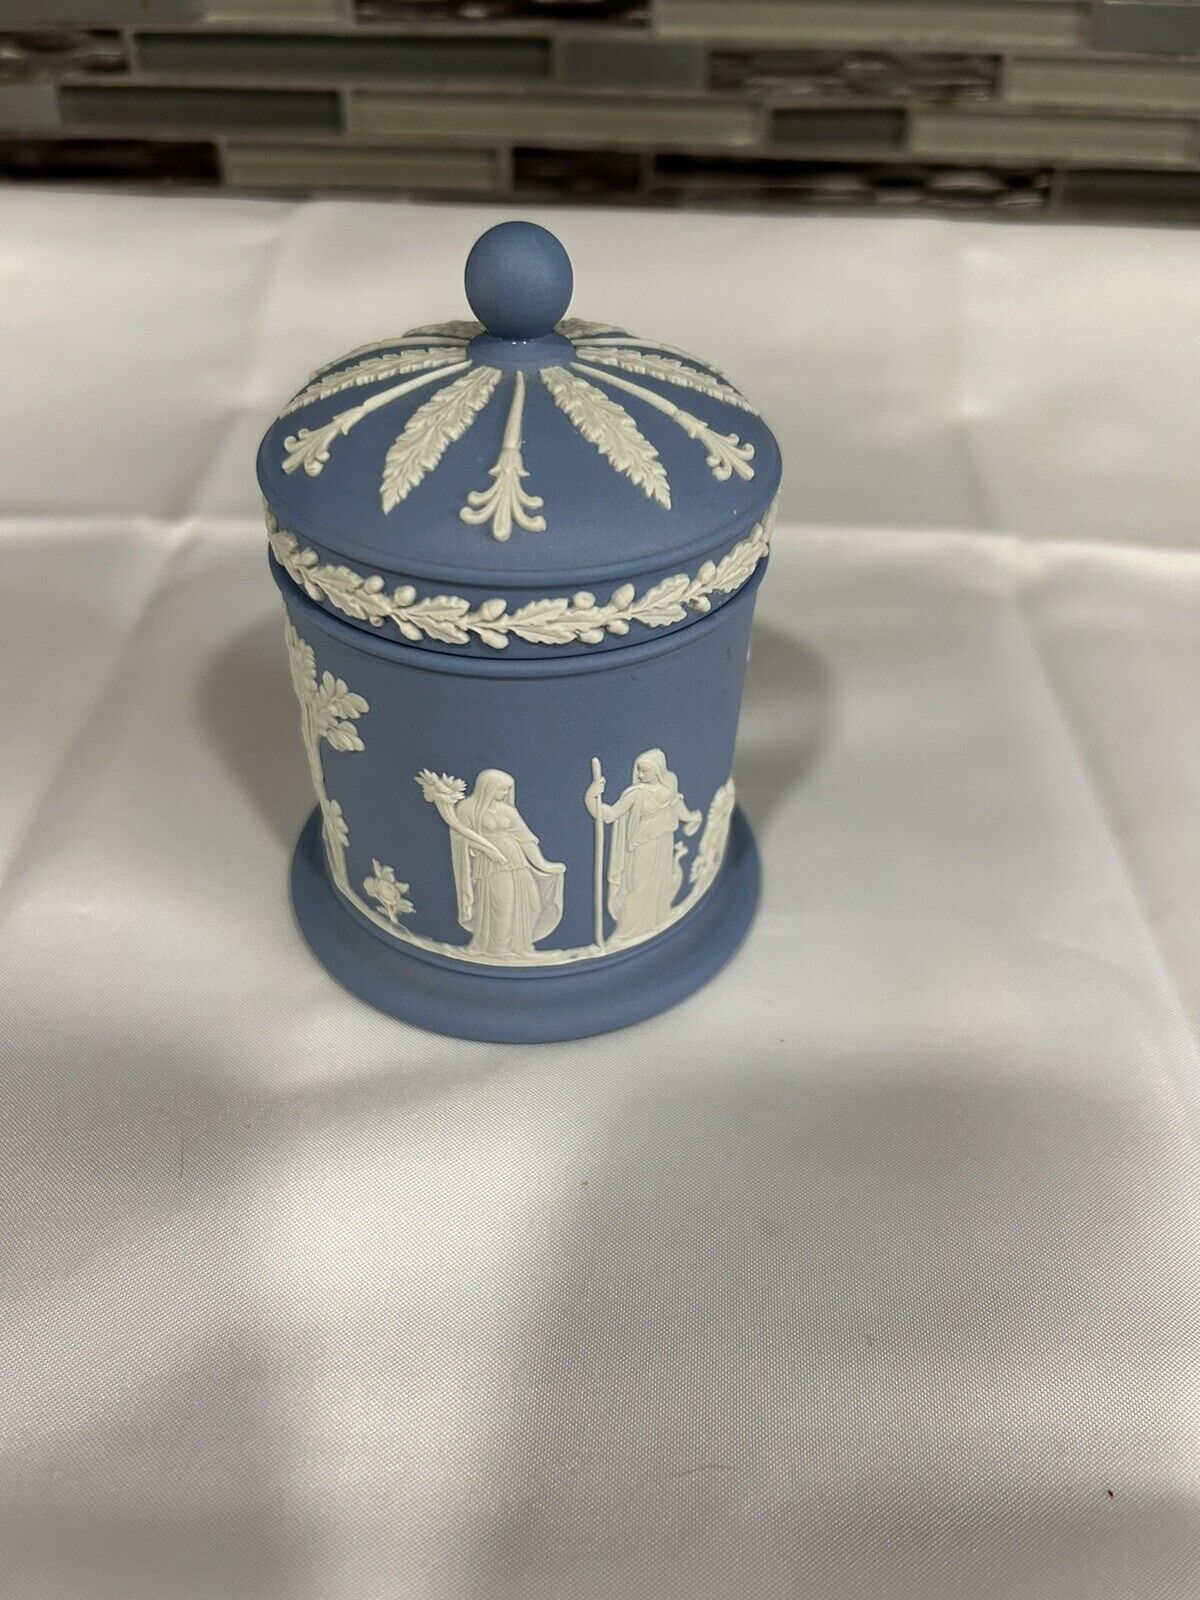 Vintage Wedgwood Blue Jasperware Tobacco Jar with Lid 4.5”